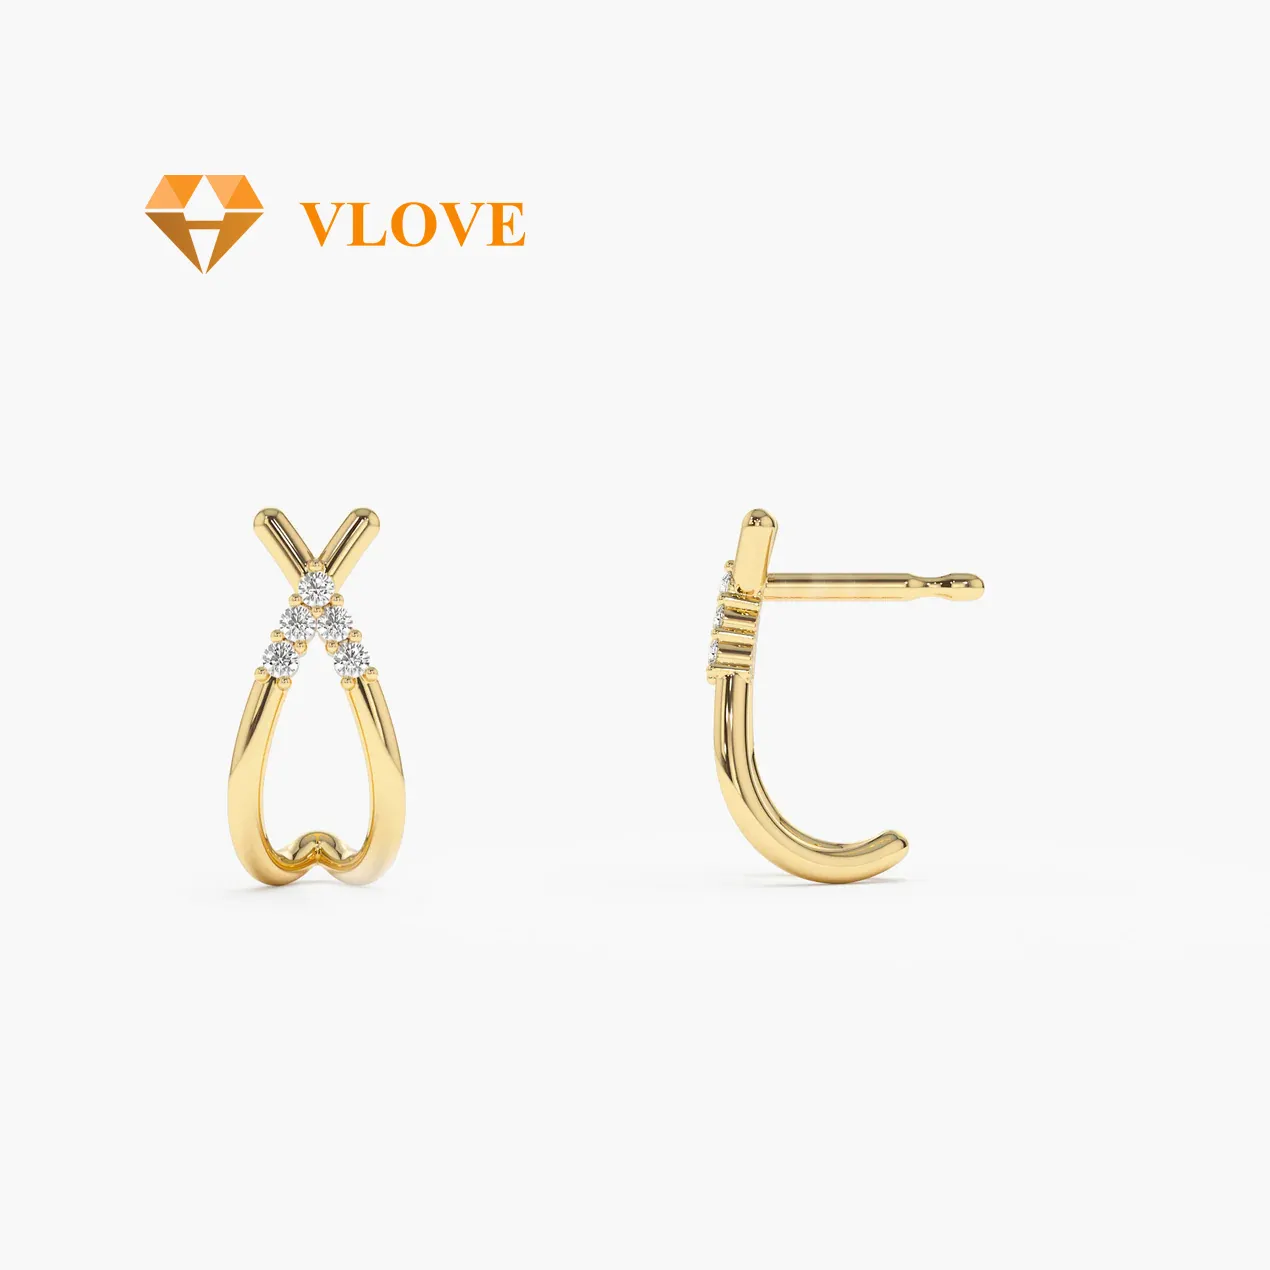 VLOVE Women Luxury Jewelry Solid Gold Jewelry 14k CrissCross Half Hoop Diamond Stud Earrings